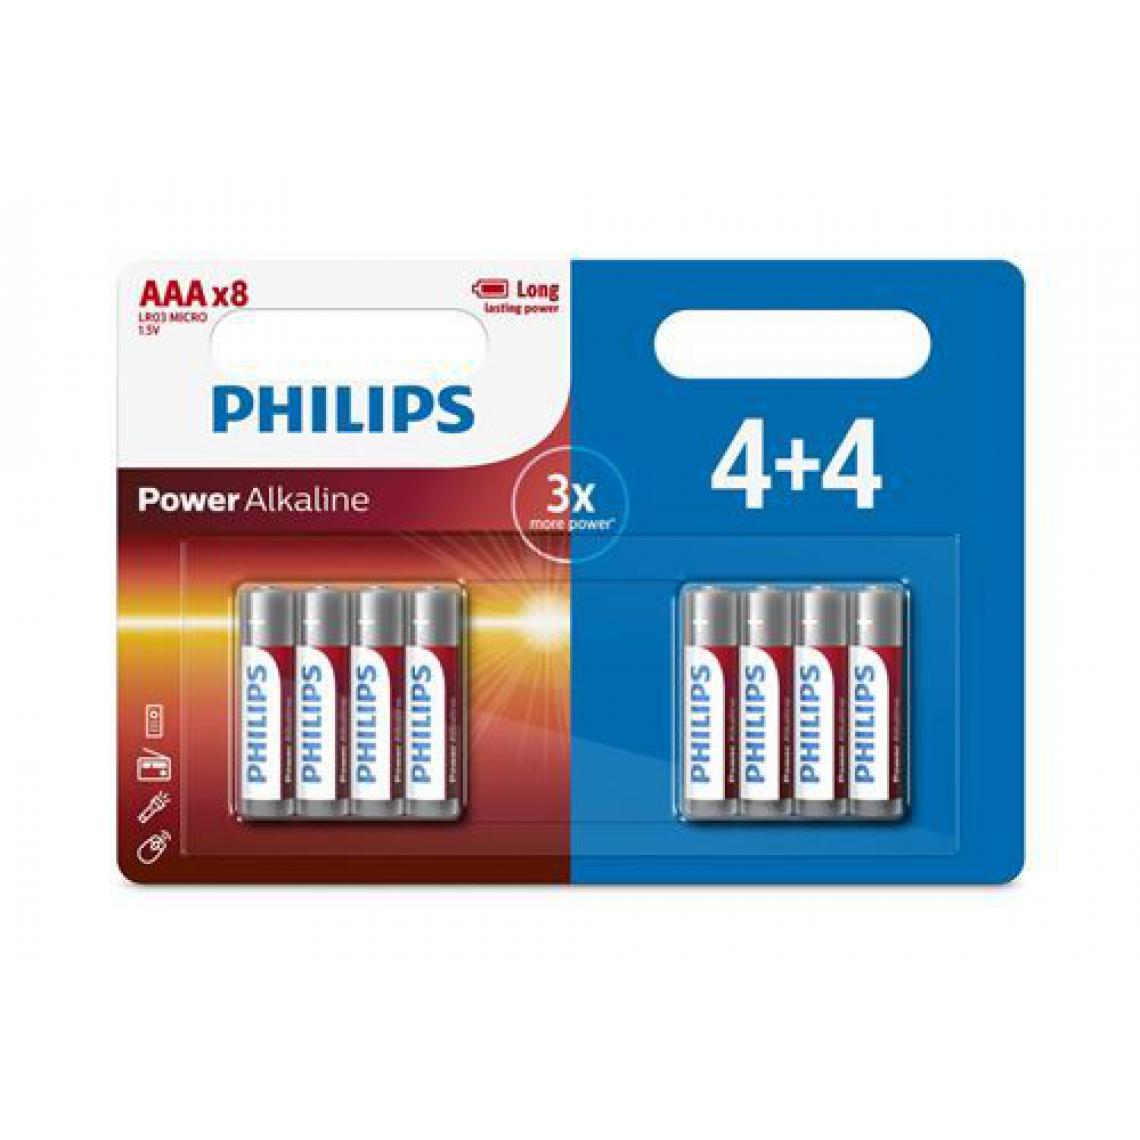 Philips - Lot de 32 piles Philips AAA (4 packs de 4+4) - Piles rechargeables